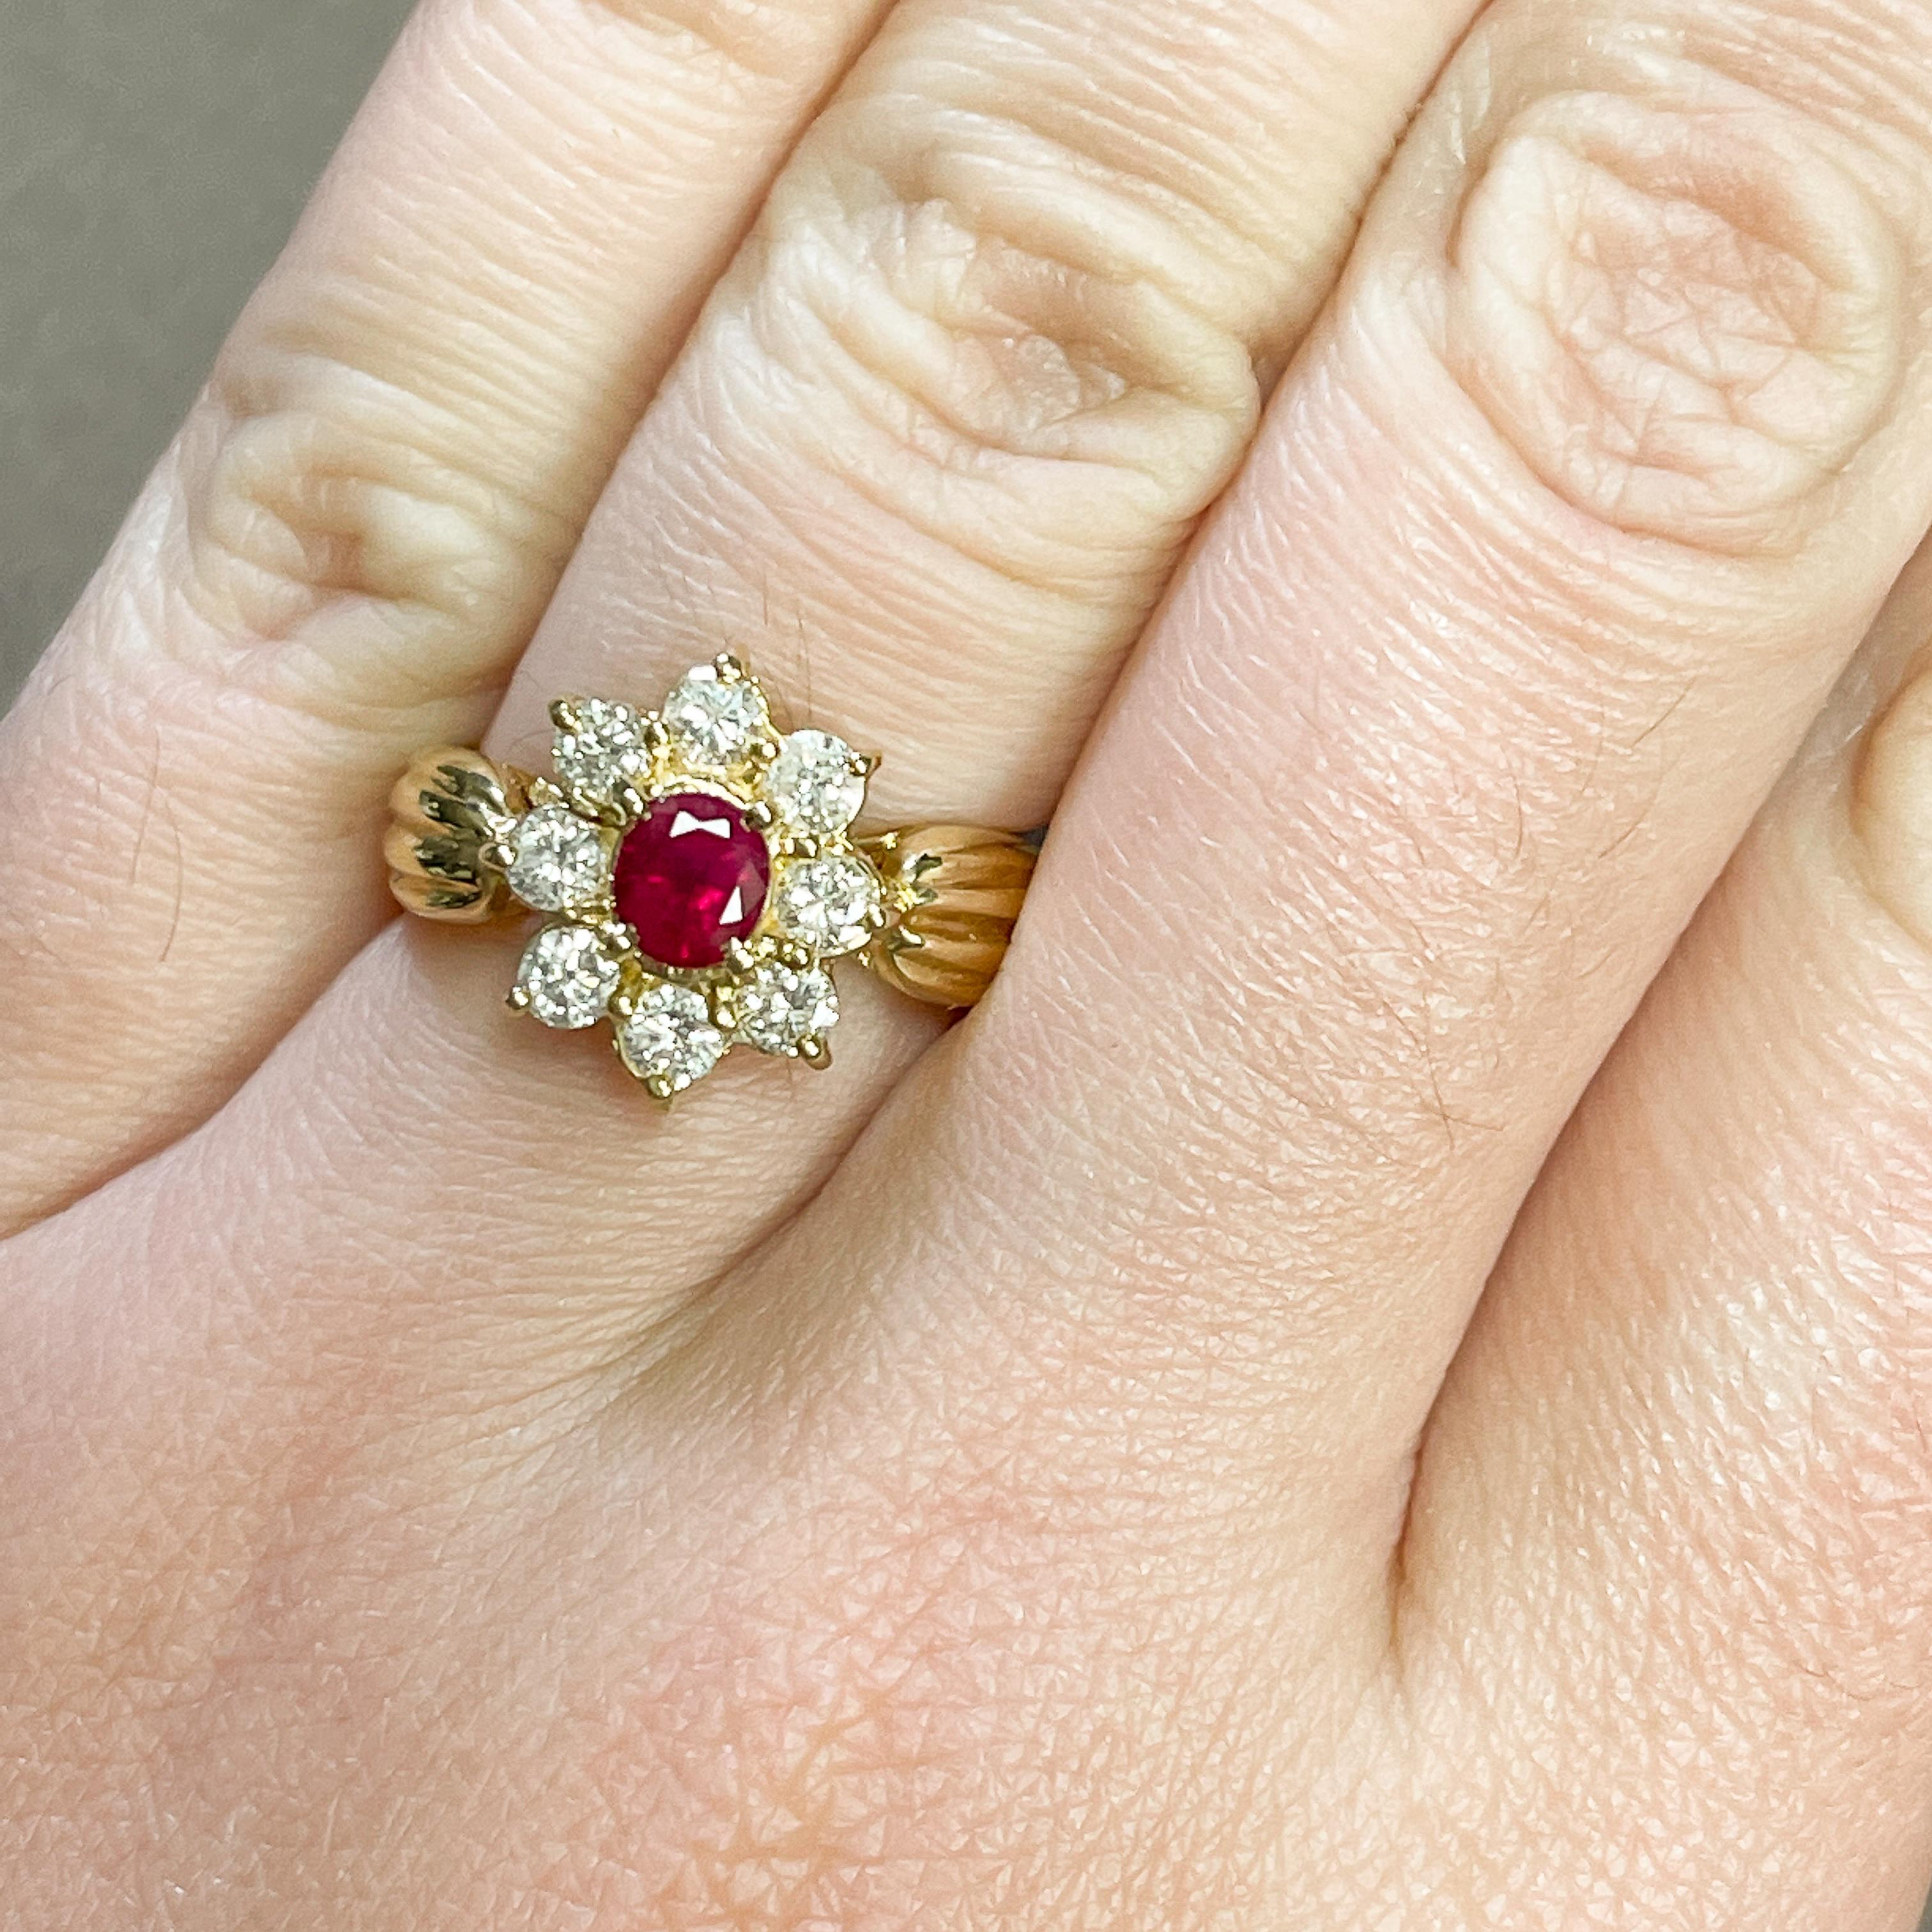 Magnifique bague florale pour femme ! Le centre du rubis est d'un rouge profond, accentué par 8 diamants ronds. Le bracelet en or jaune est strié comme une tige florale. Le rubis symbolise l'amour, la passion et l'engagement. C'est aussi la pierre